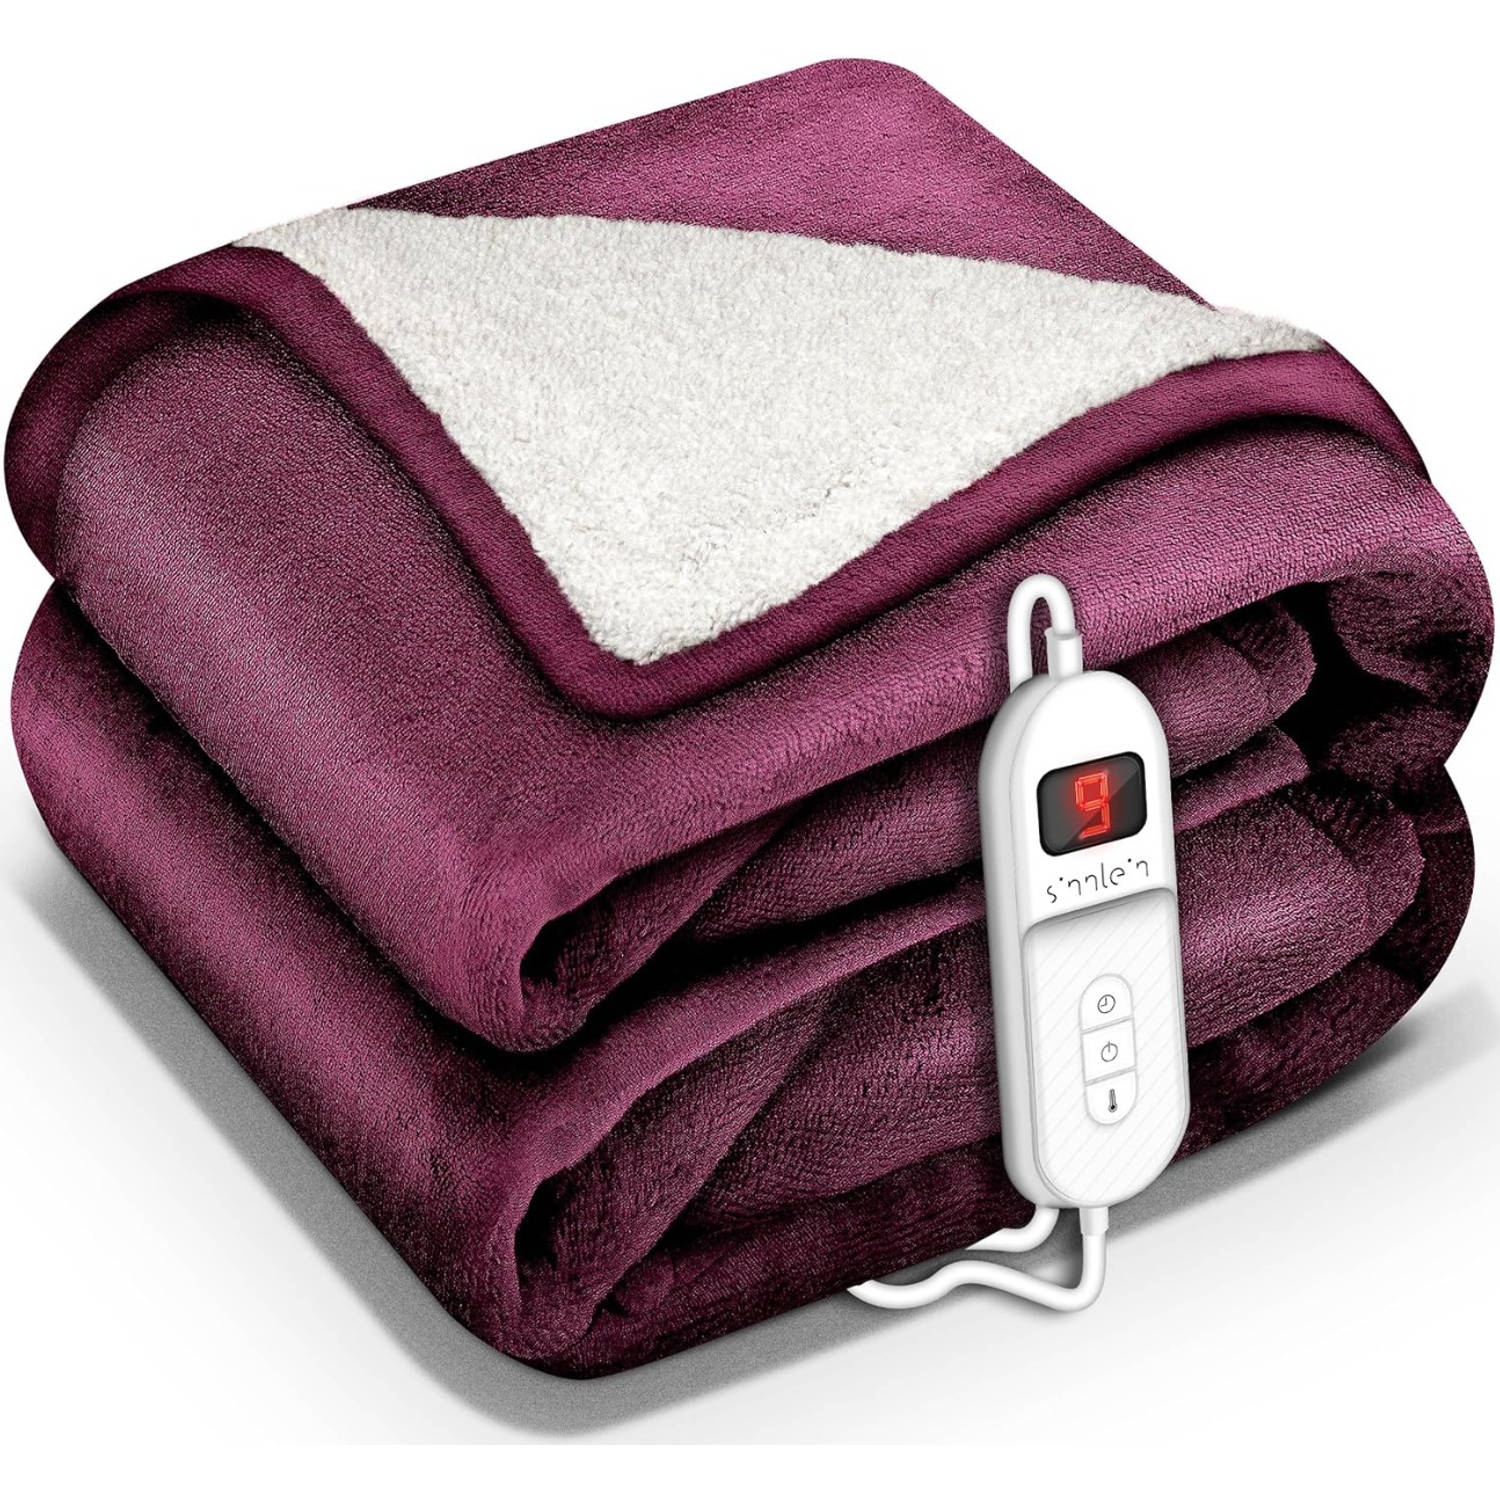 Sinnlein- Elektrische deken met automatische uitschakeling, rood, 160x120 cm, warmtedeken met 9 temp